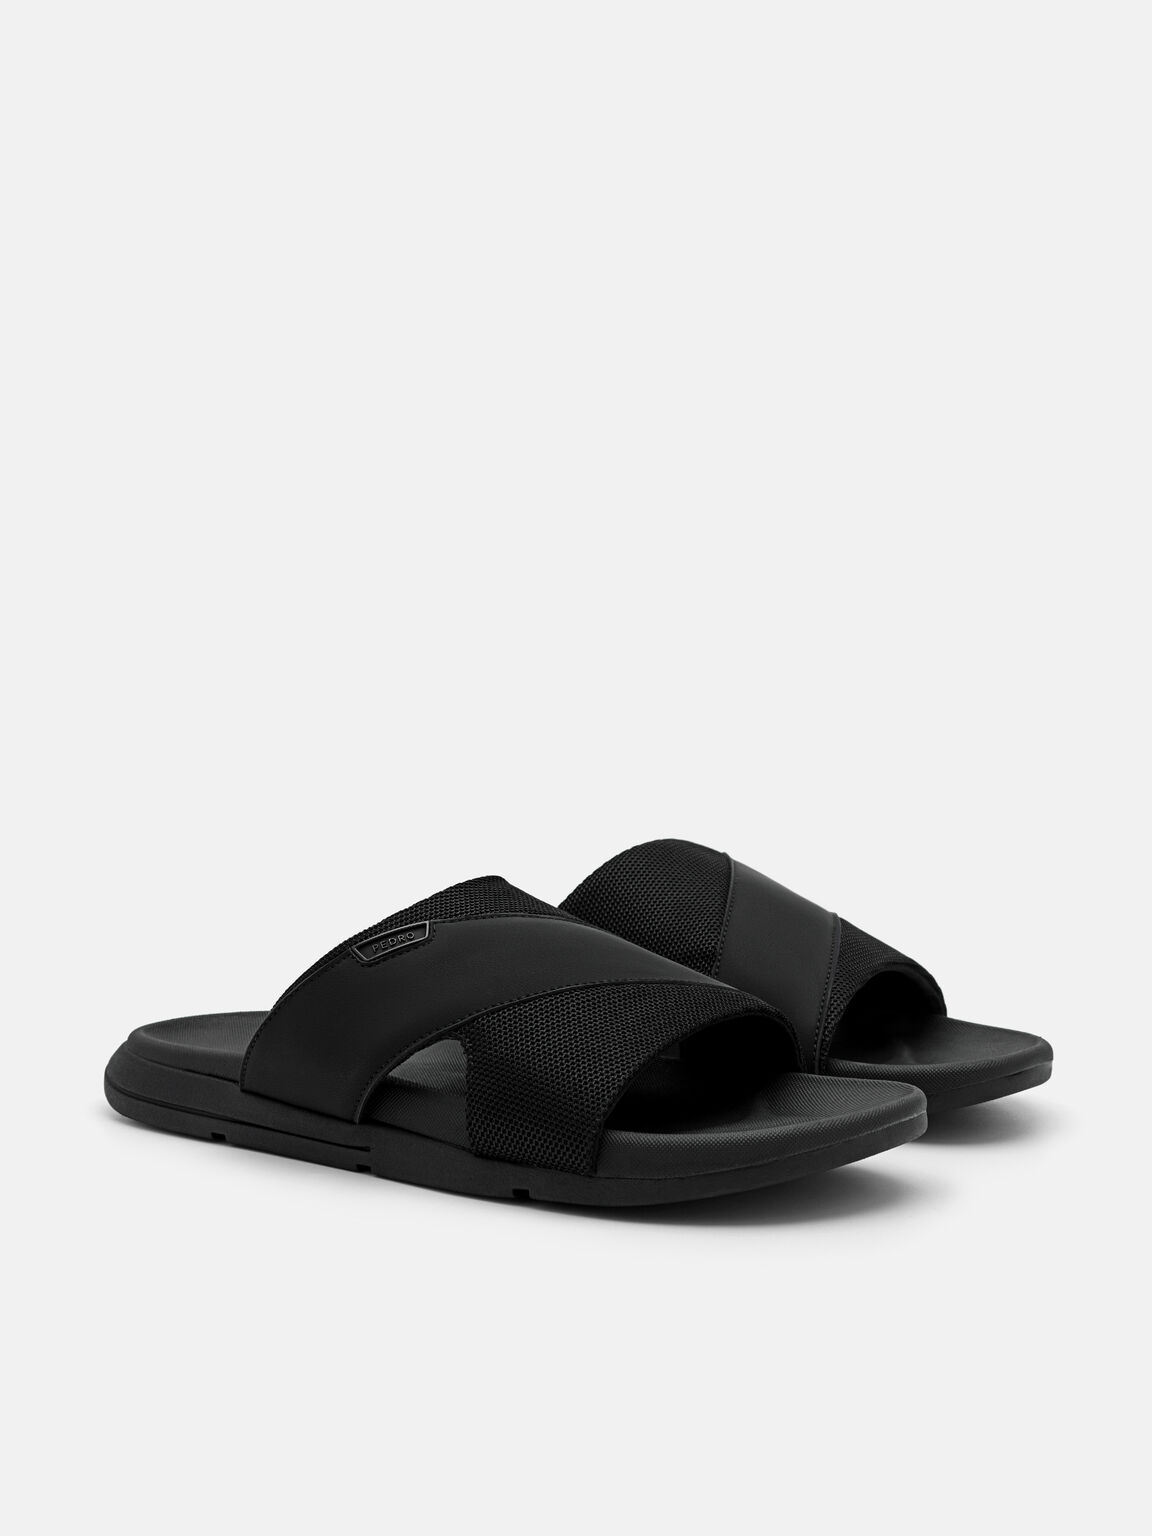 Black Mesh Slide Sandals - PEDRO International